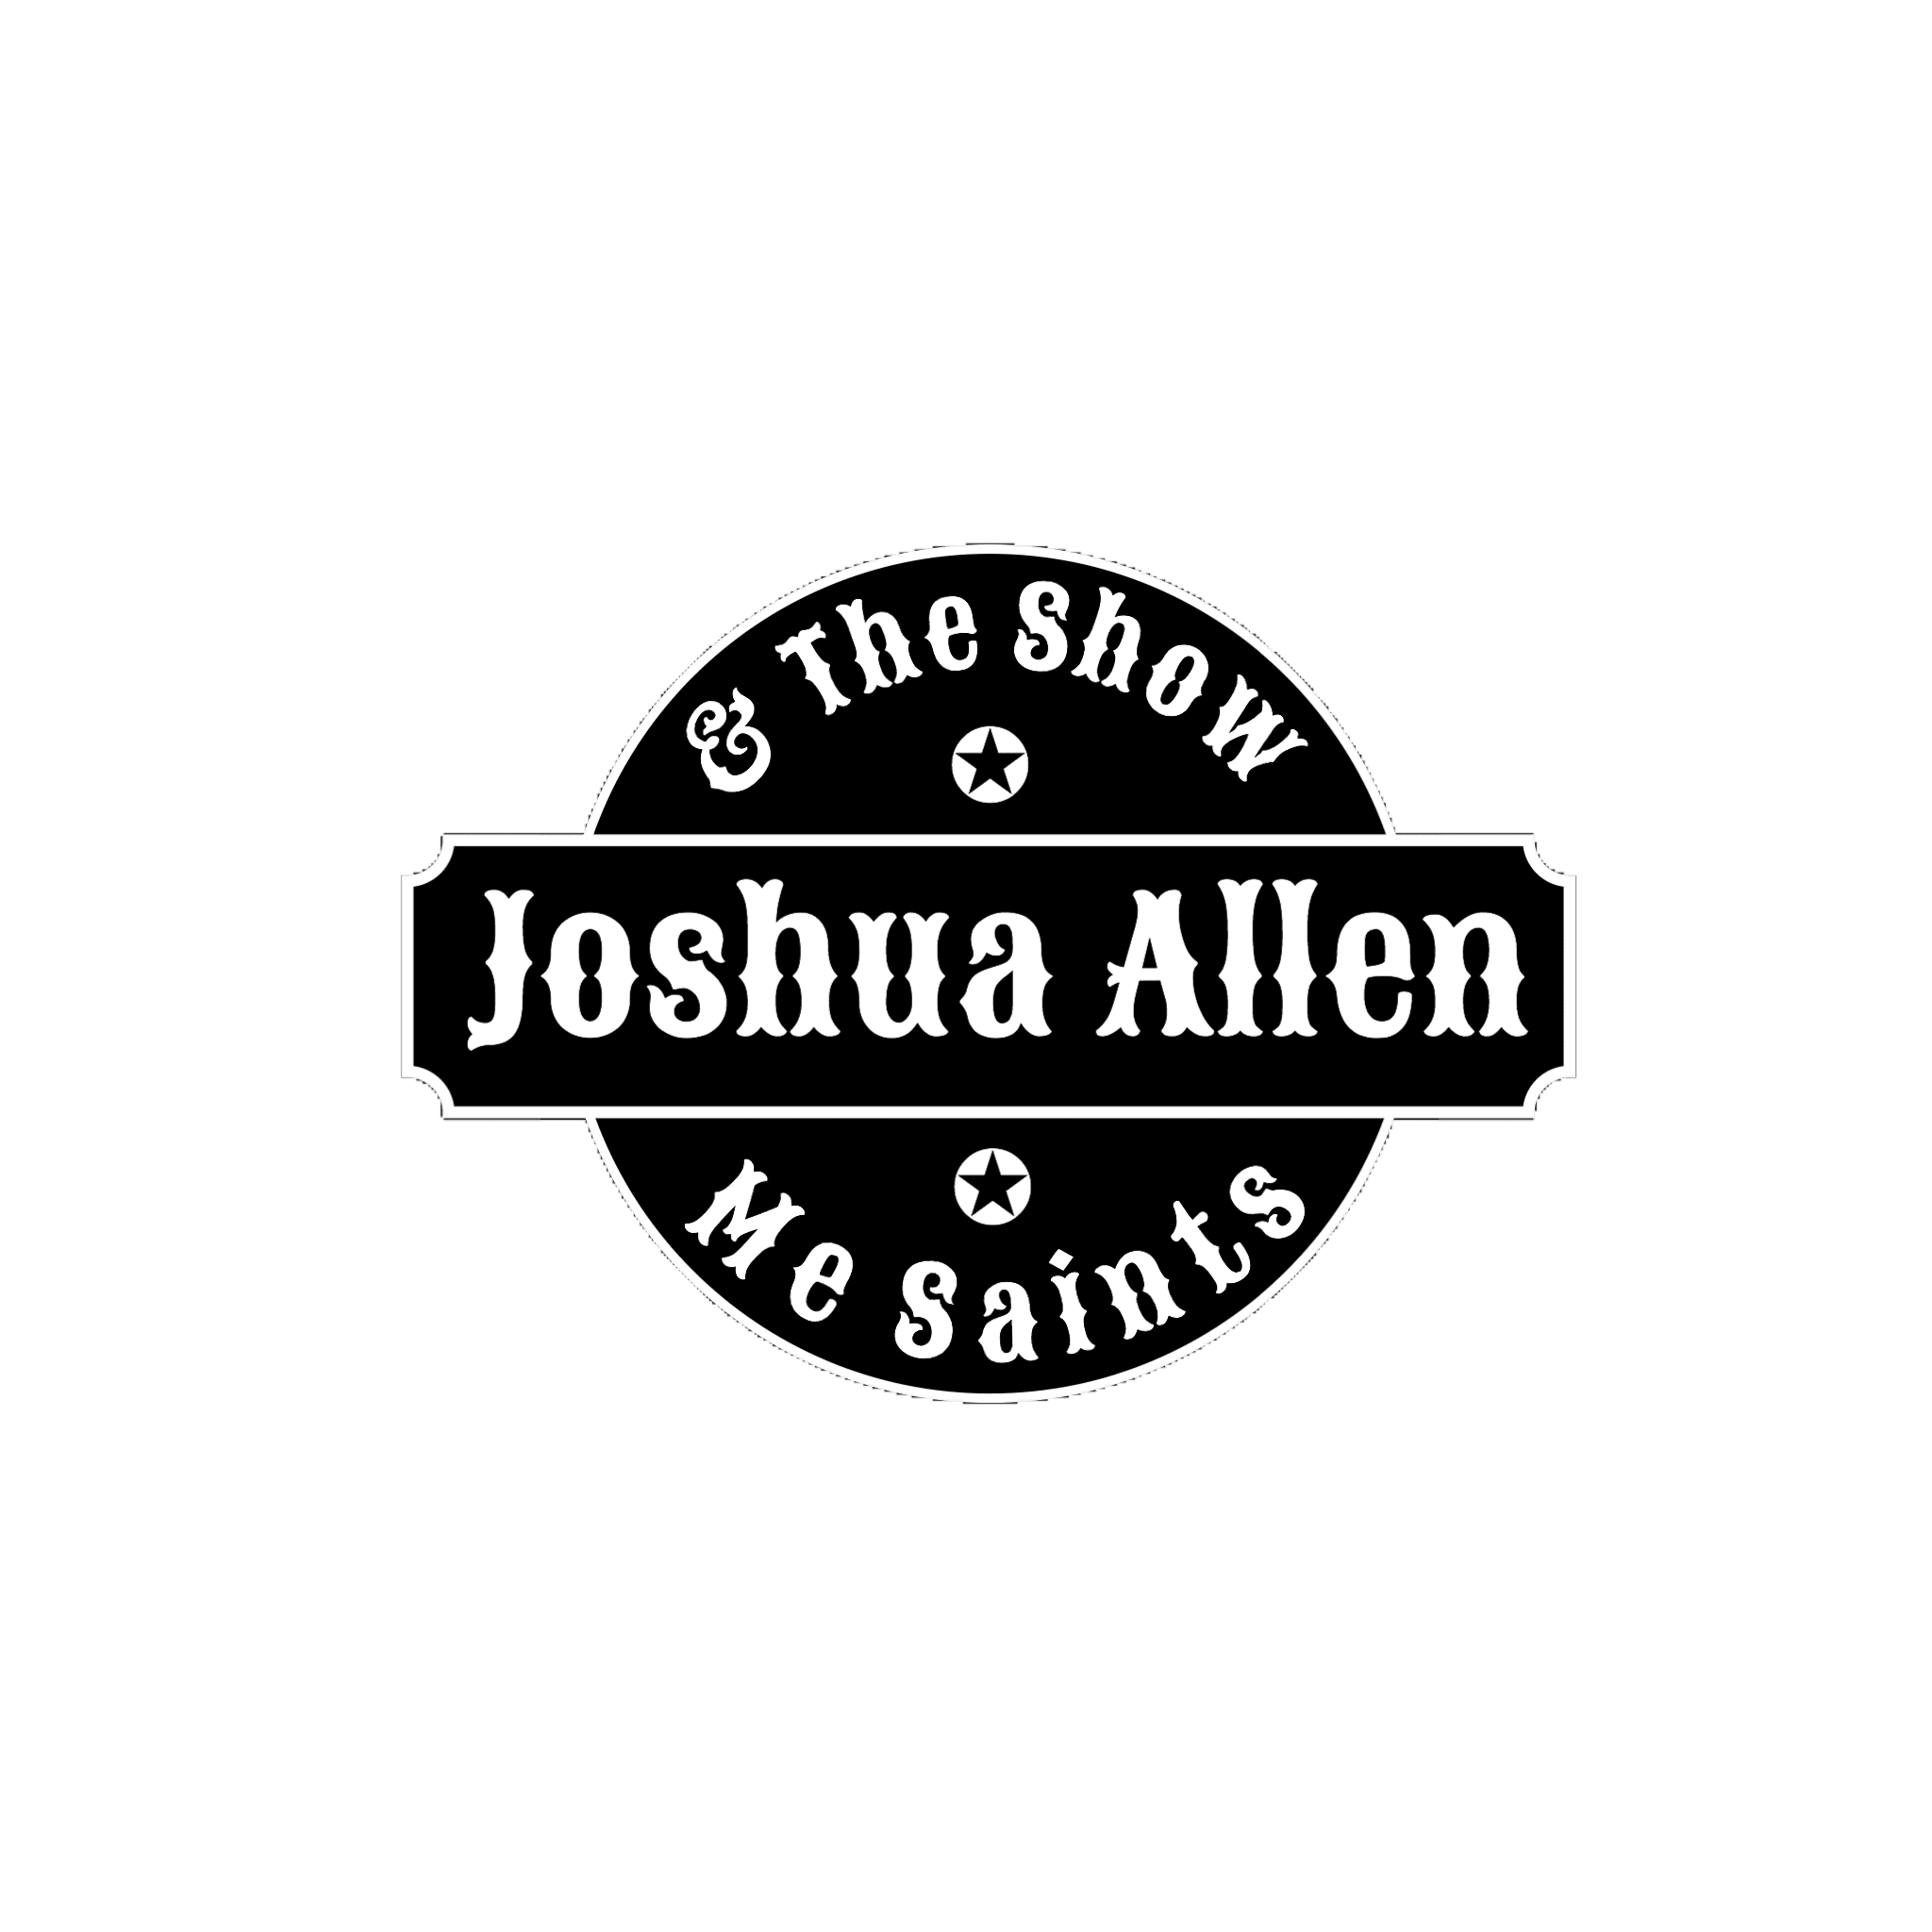 Joshua Allen and The Show Me Saints